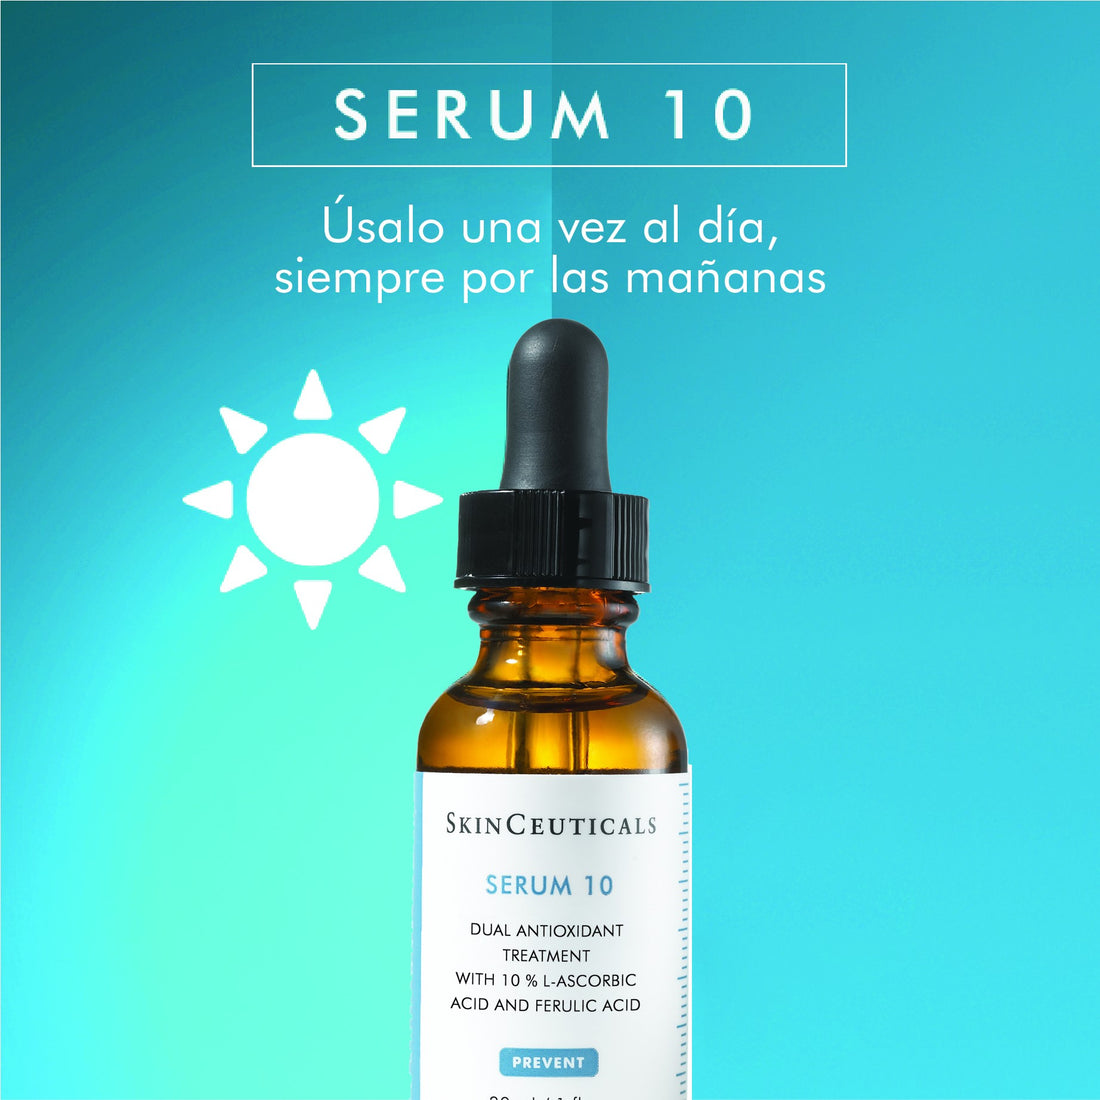 Skinceuticals Serum 10 (30ml)